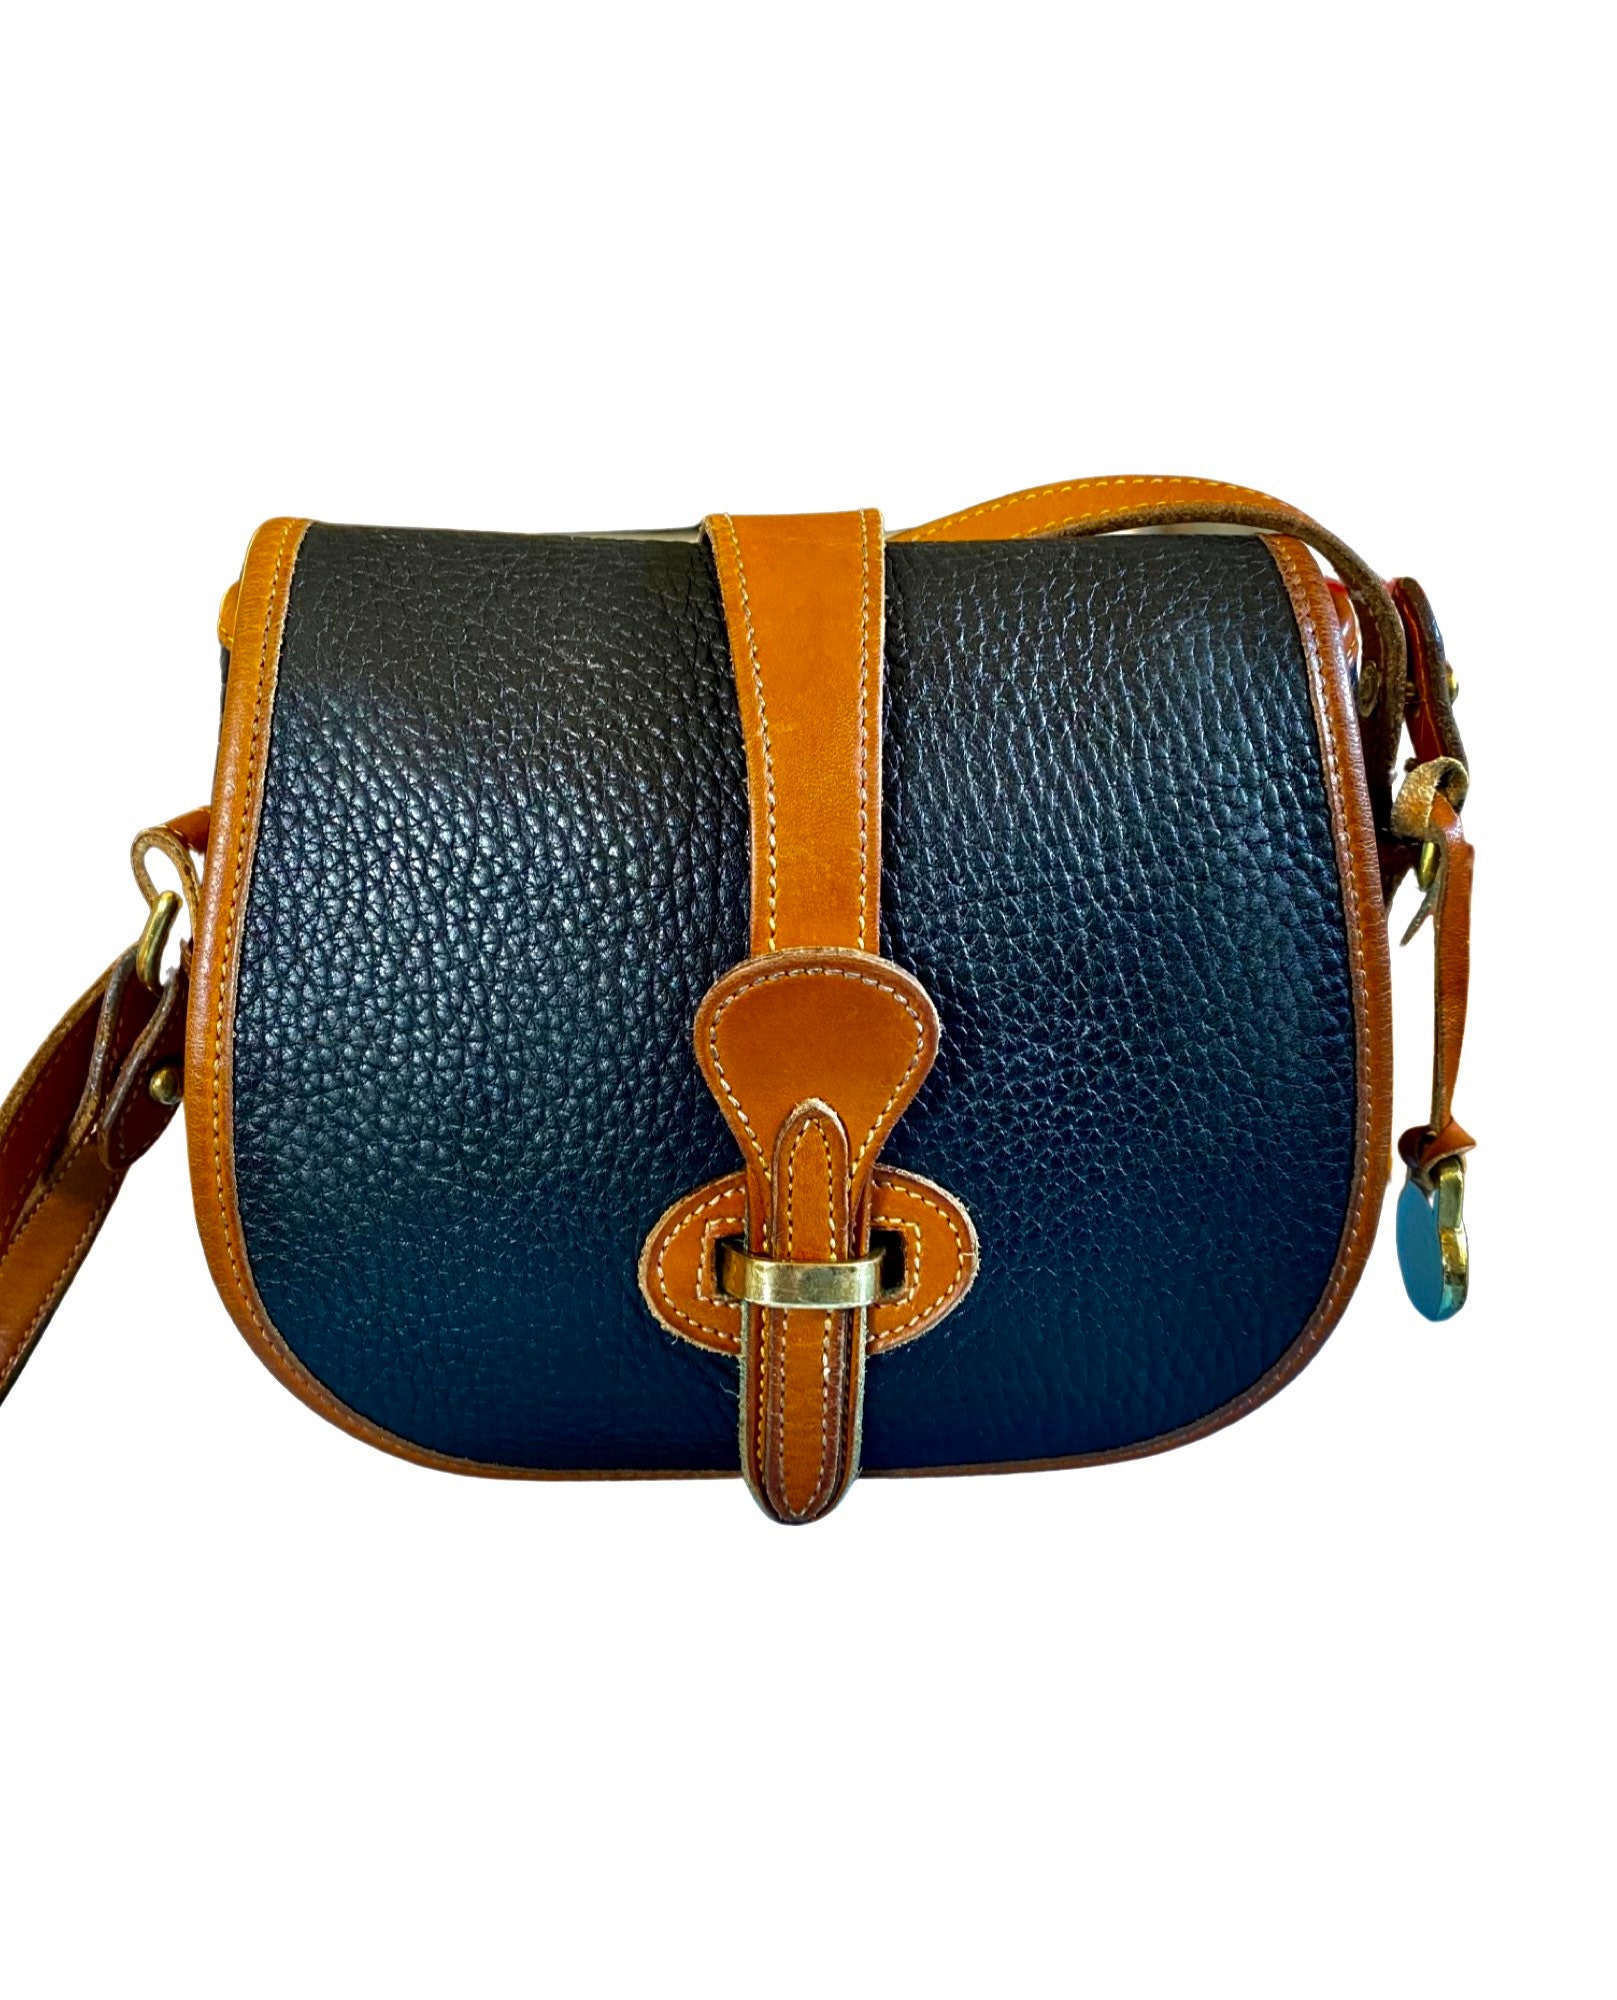 Vintage Leather Purse 90s Hand Bag Vintage Shoulder Bag Retro Boho Style Express Label Fully Lined Interior Zipper Pocket